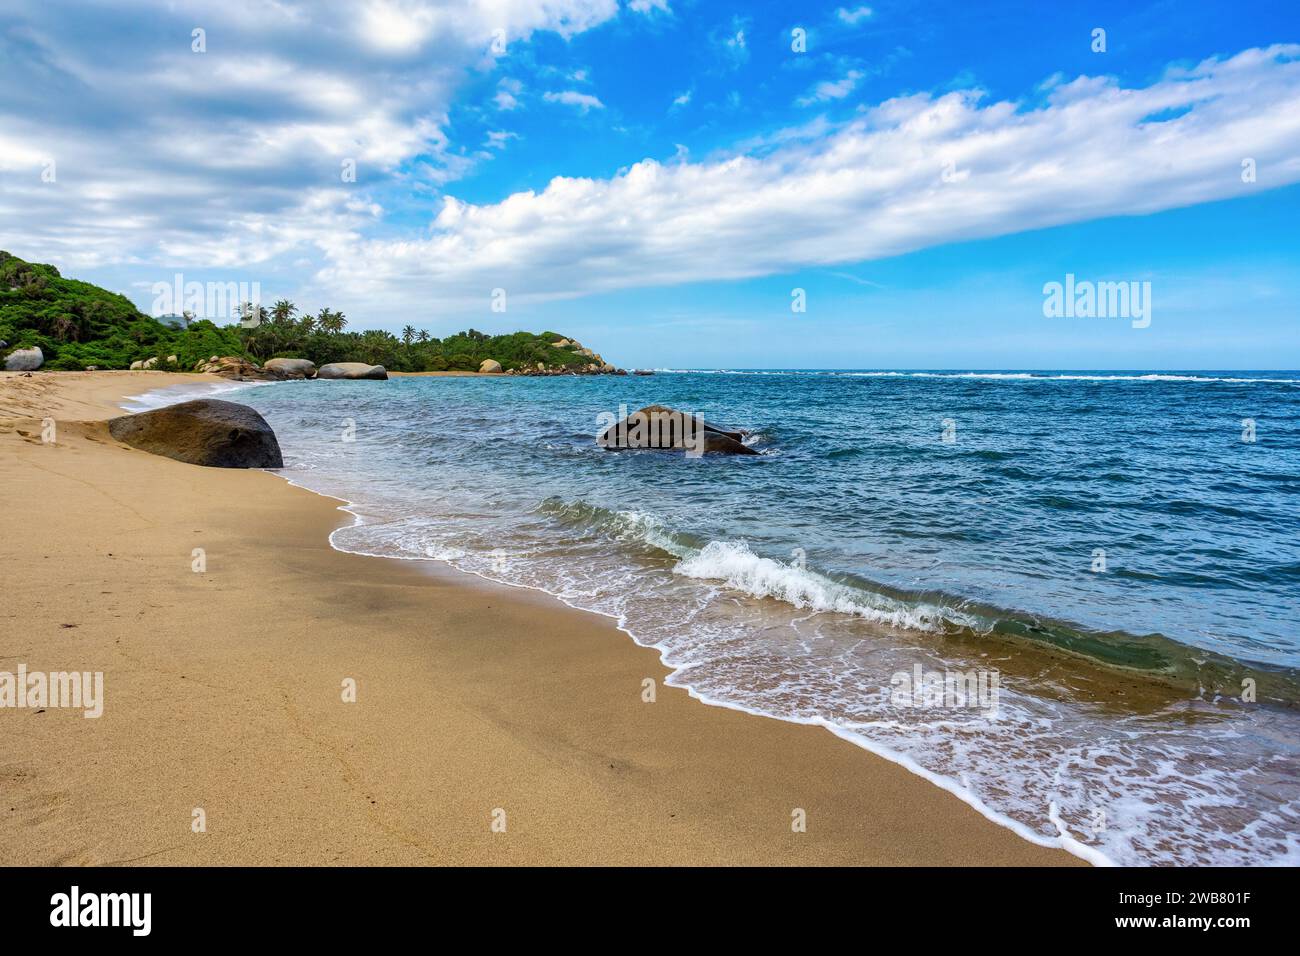 La plus belle plage des caraïbes, Playa Arenilla dans le parc national de Tayrona, Colombie Banque D'Images